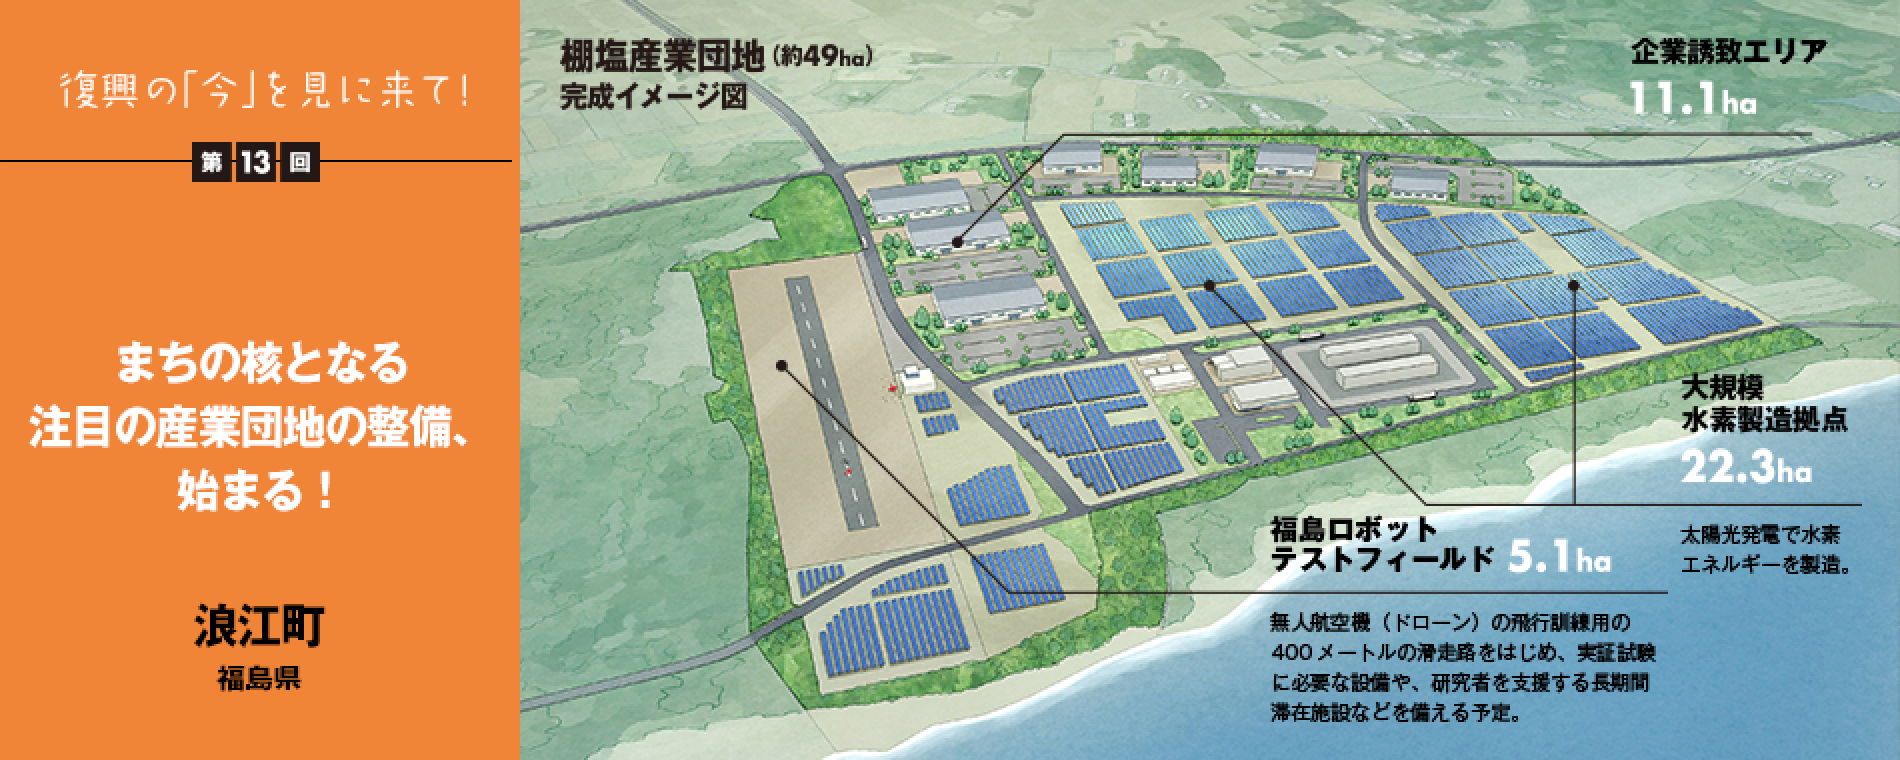 復興の「今」を見に来て！第13回 - まちの核となる注目の産業団地の整備、始まる！ 福島県浪江町